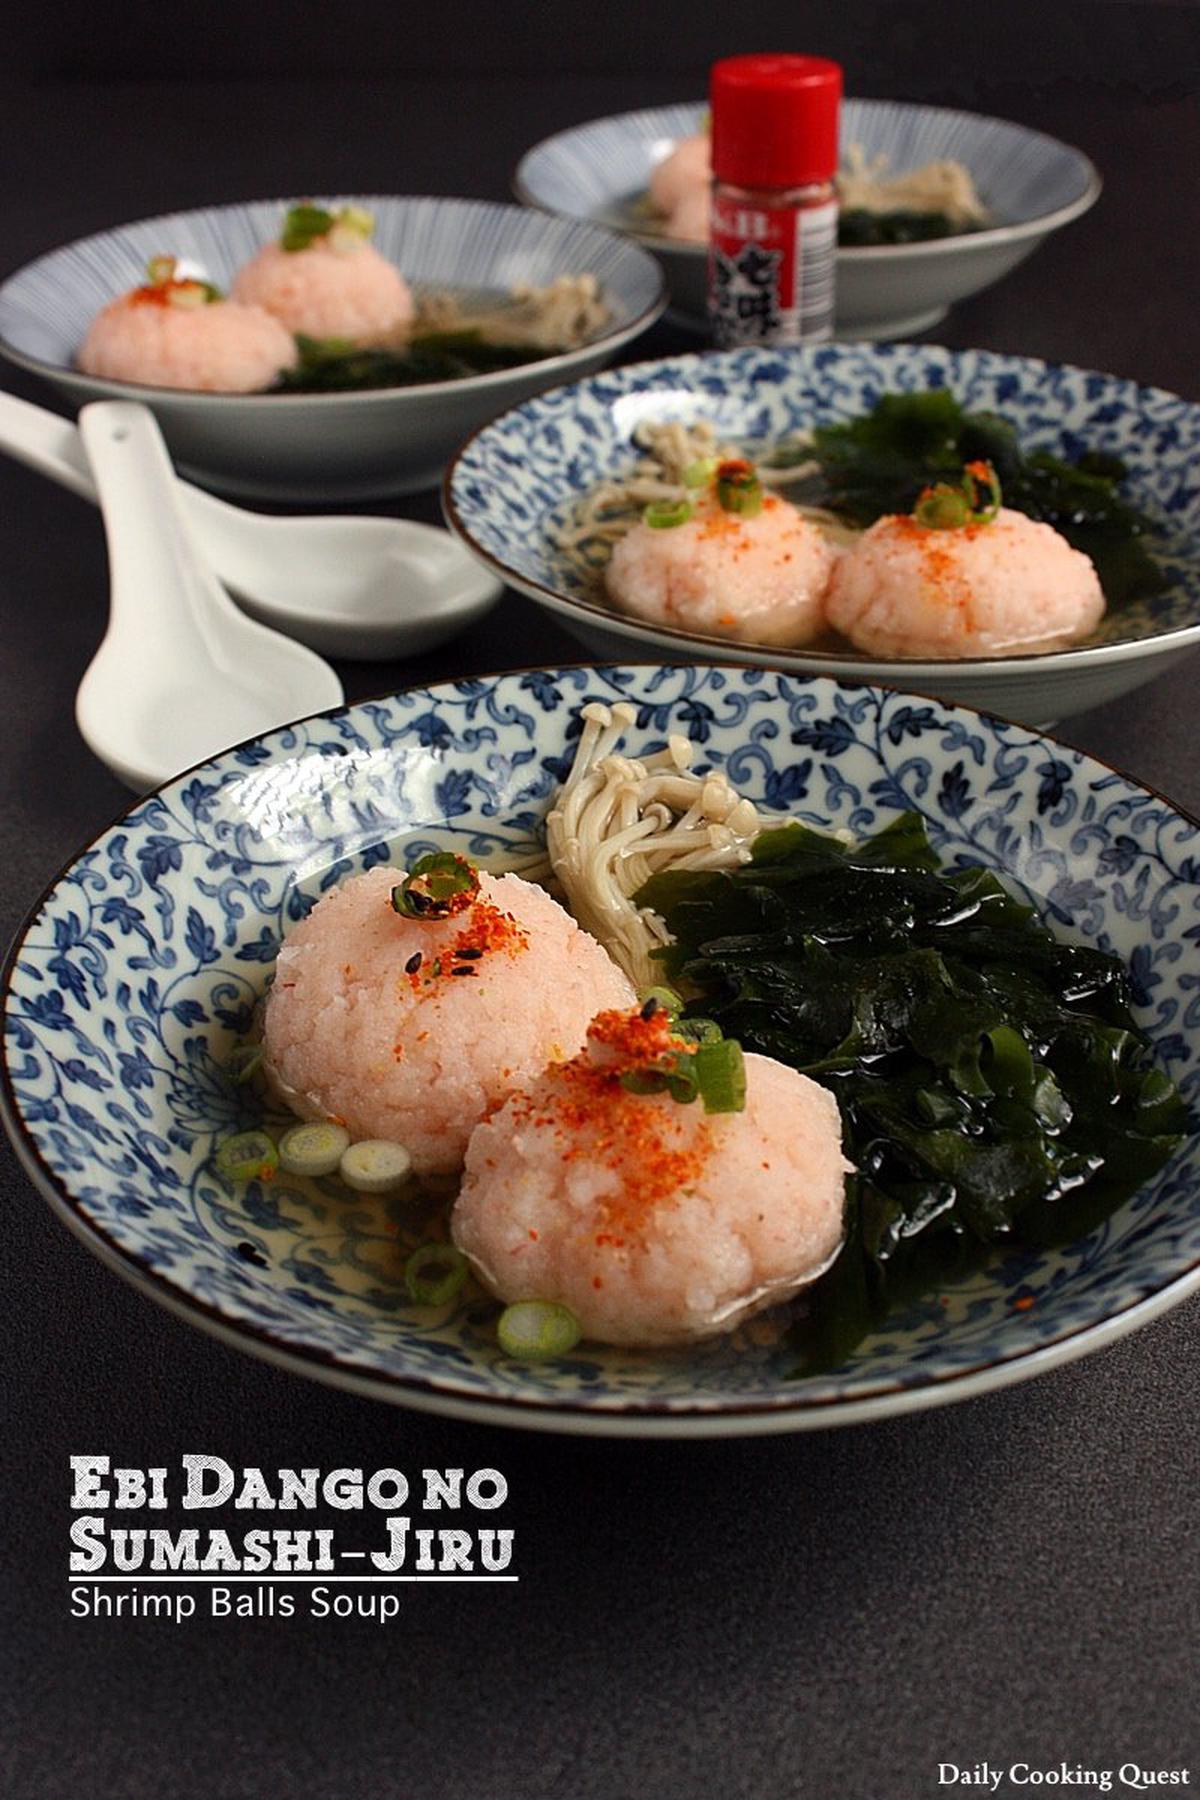 Ebi Dango no Sumashi-Jiru - Shrimp Balls Soup